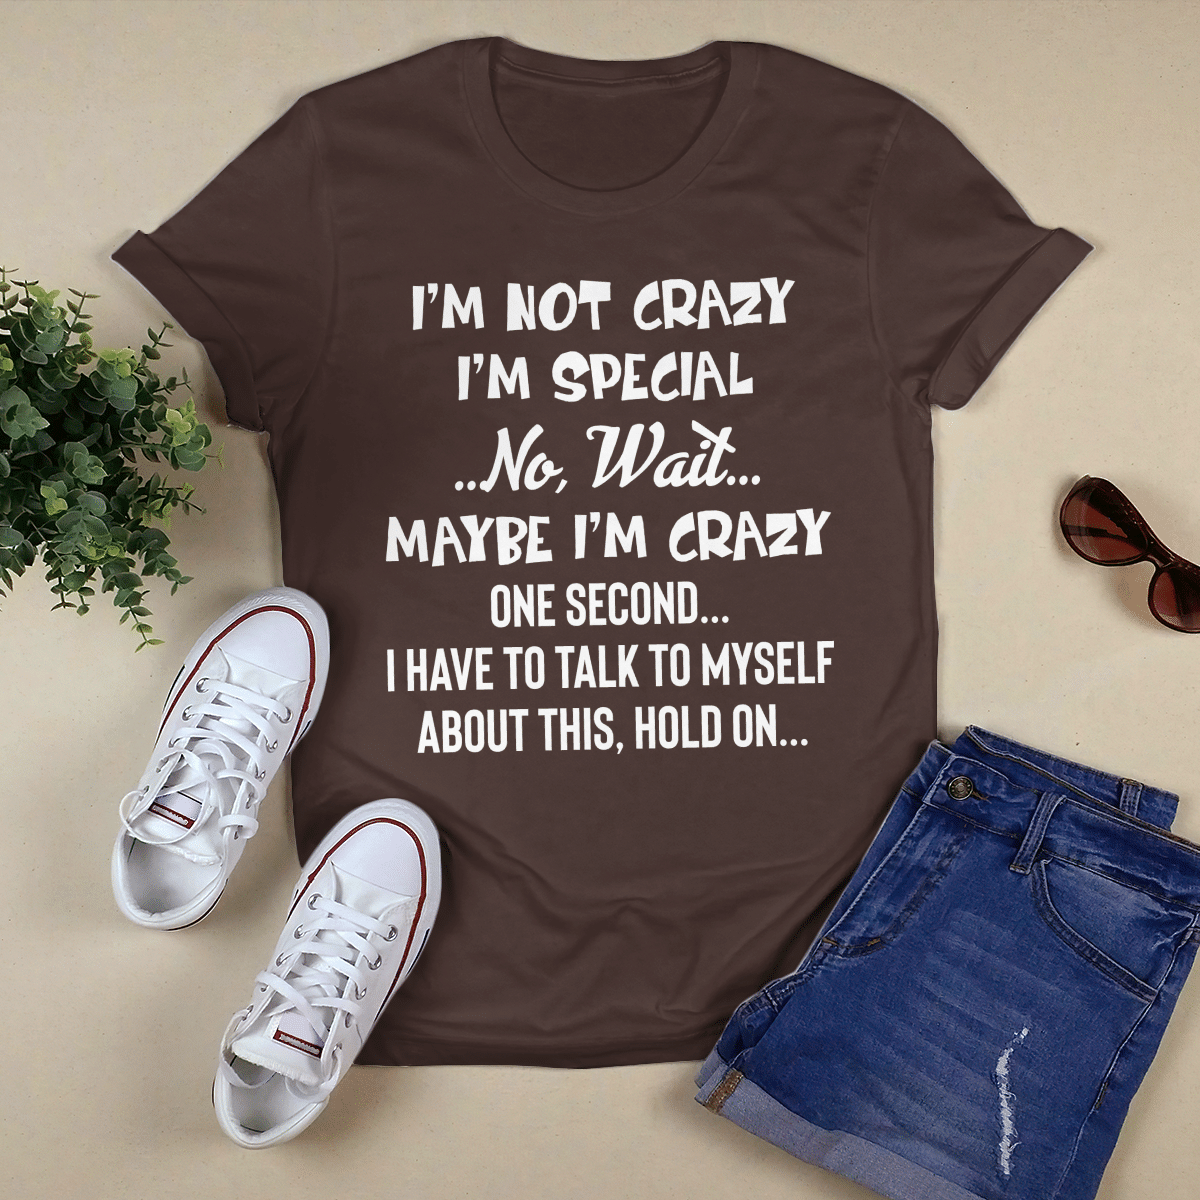 I_m Not Crazy I_m Special shirt